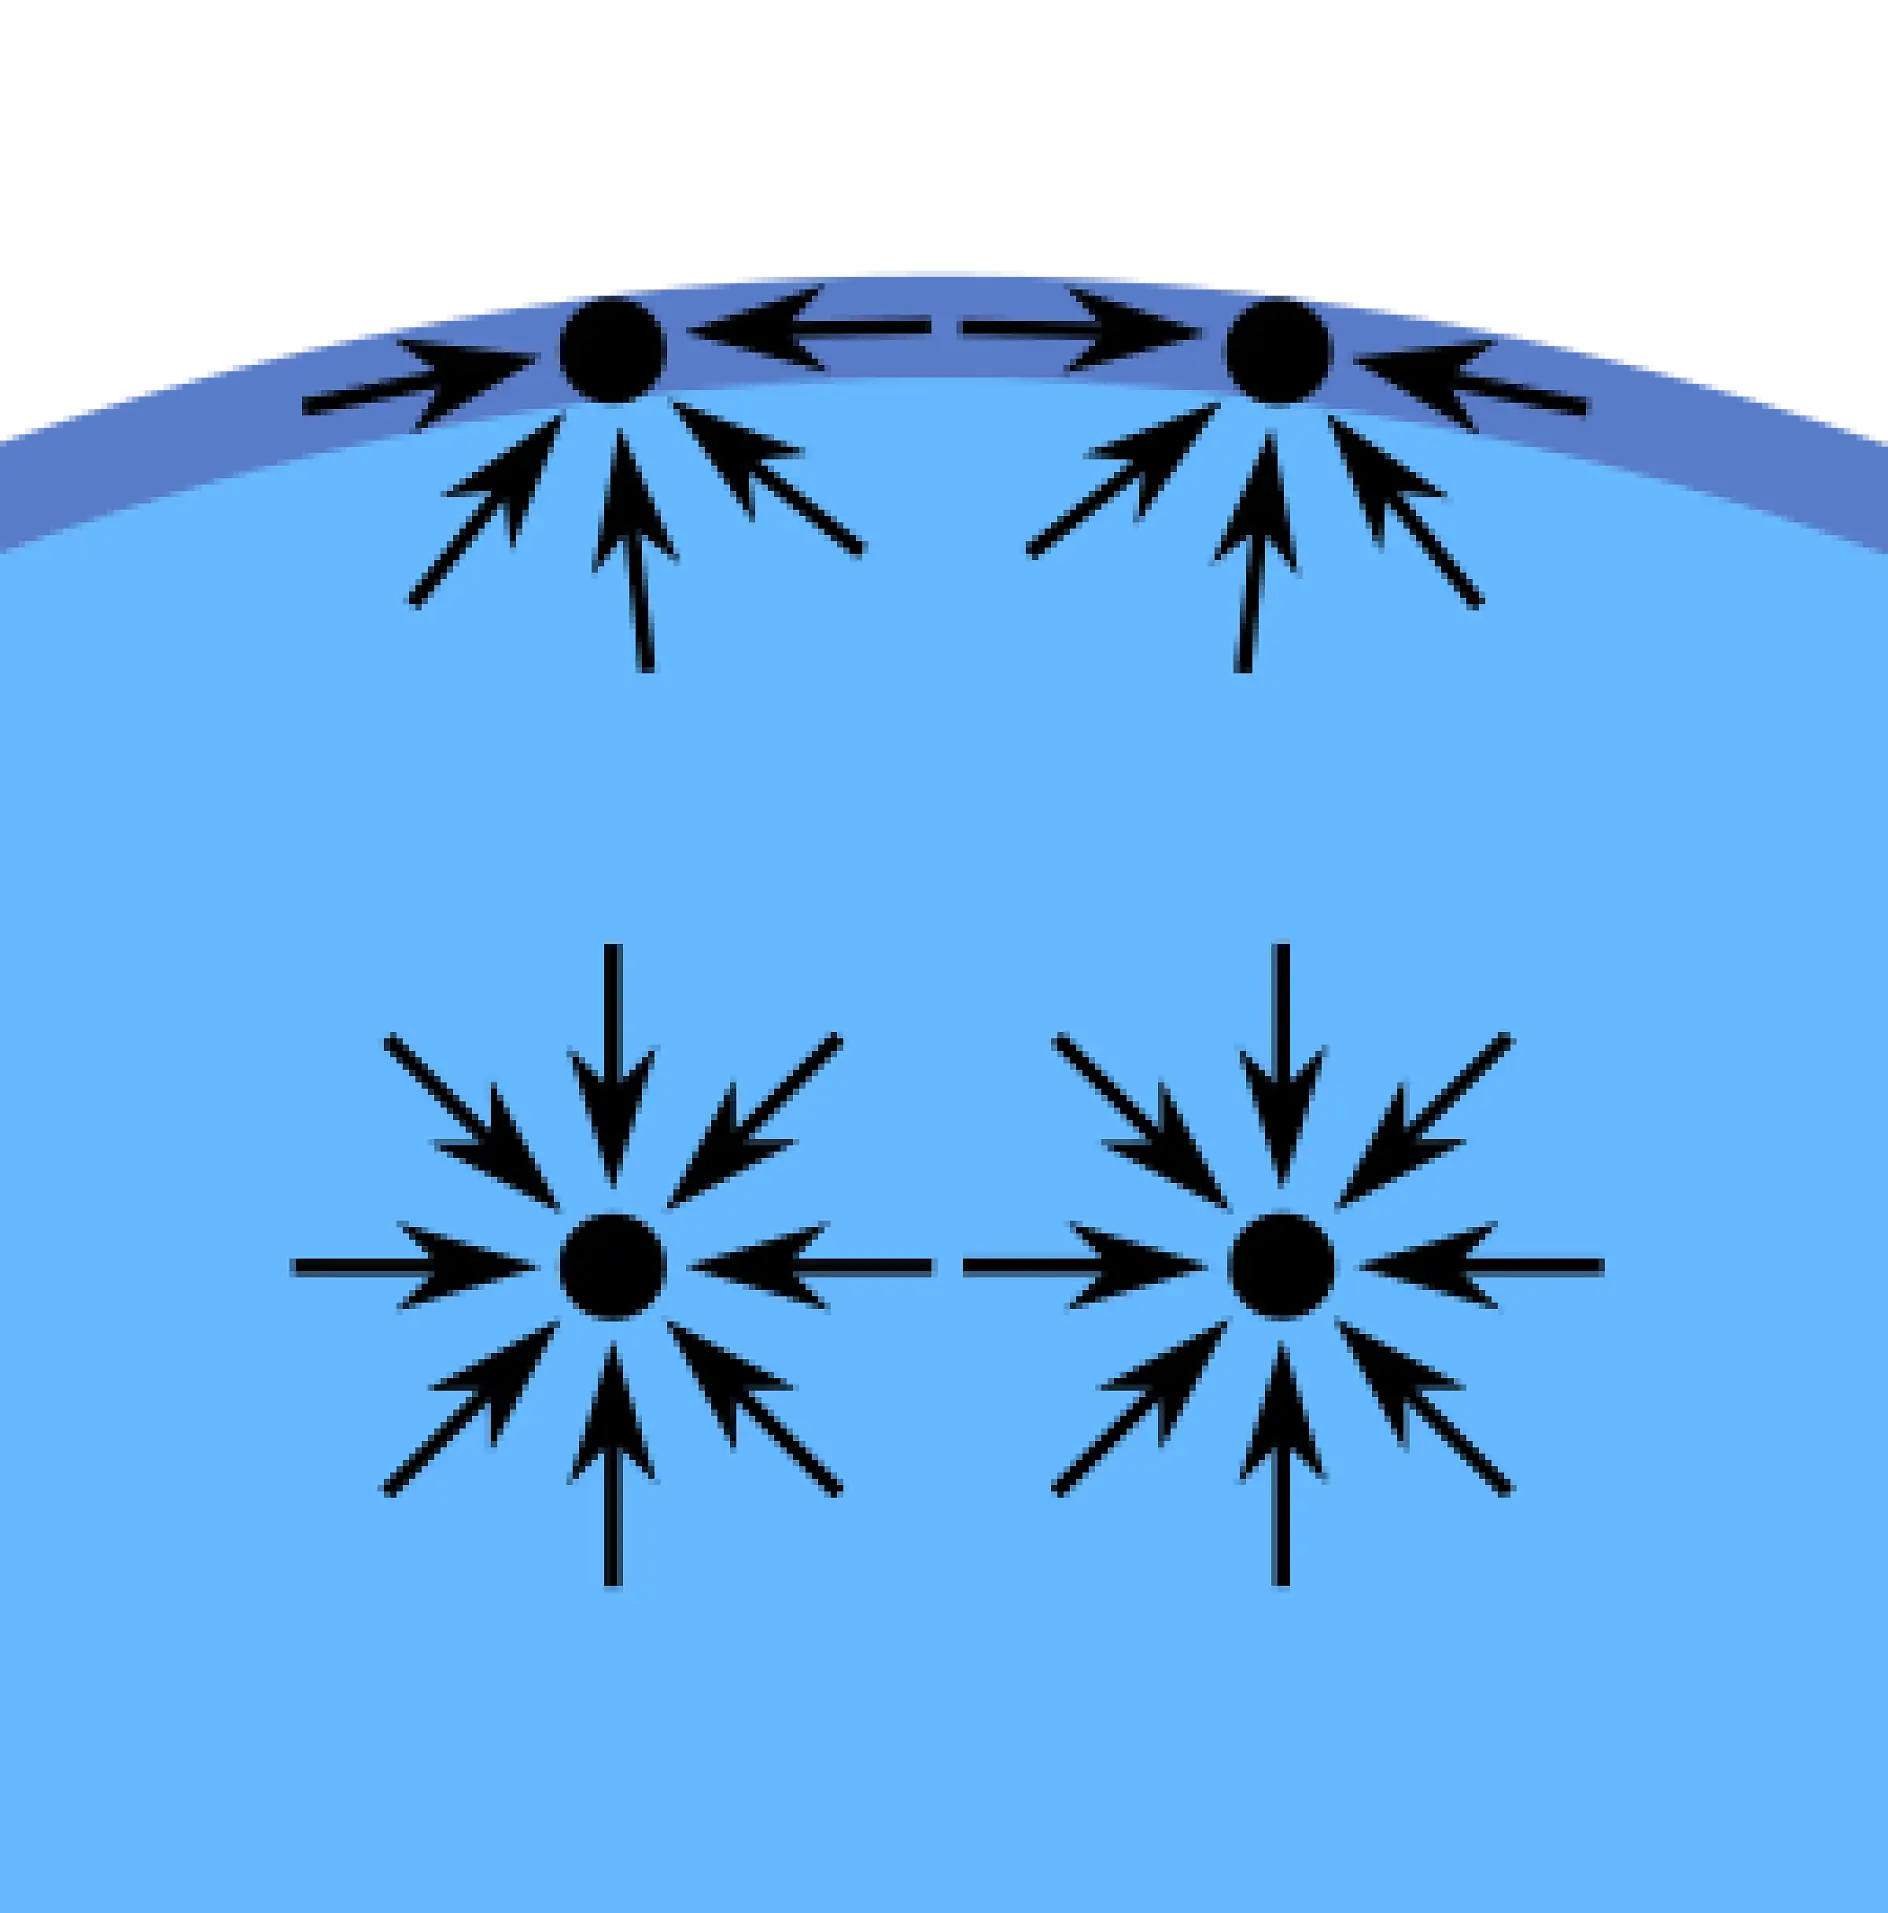 Kohézne sily, teda (vnútorná) príťažlivá sila, medzi molekulami kvapaliny vytvárajú jav, ktorý sa nazýva povrchové napätie. Molekuly na povrchu pohára s vodou nemajú okolo seba iné molekuly vody na všetkých stranách. Preto sú priťahované do stredu vody a ich kohézia je vyššia vo vzťahu k molekulám vody vedľa nich a pod nimi. Táto príťažlivosť je vyššia než príťažlivosť k molekulám vzduchu nad nimi. V konečnom dôsledku táto vnútorná sila vytvára povrch, ktorý oddeľuje vodu a vzduch.